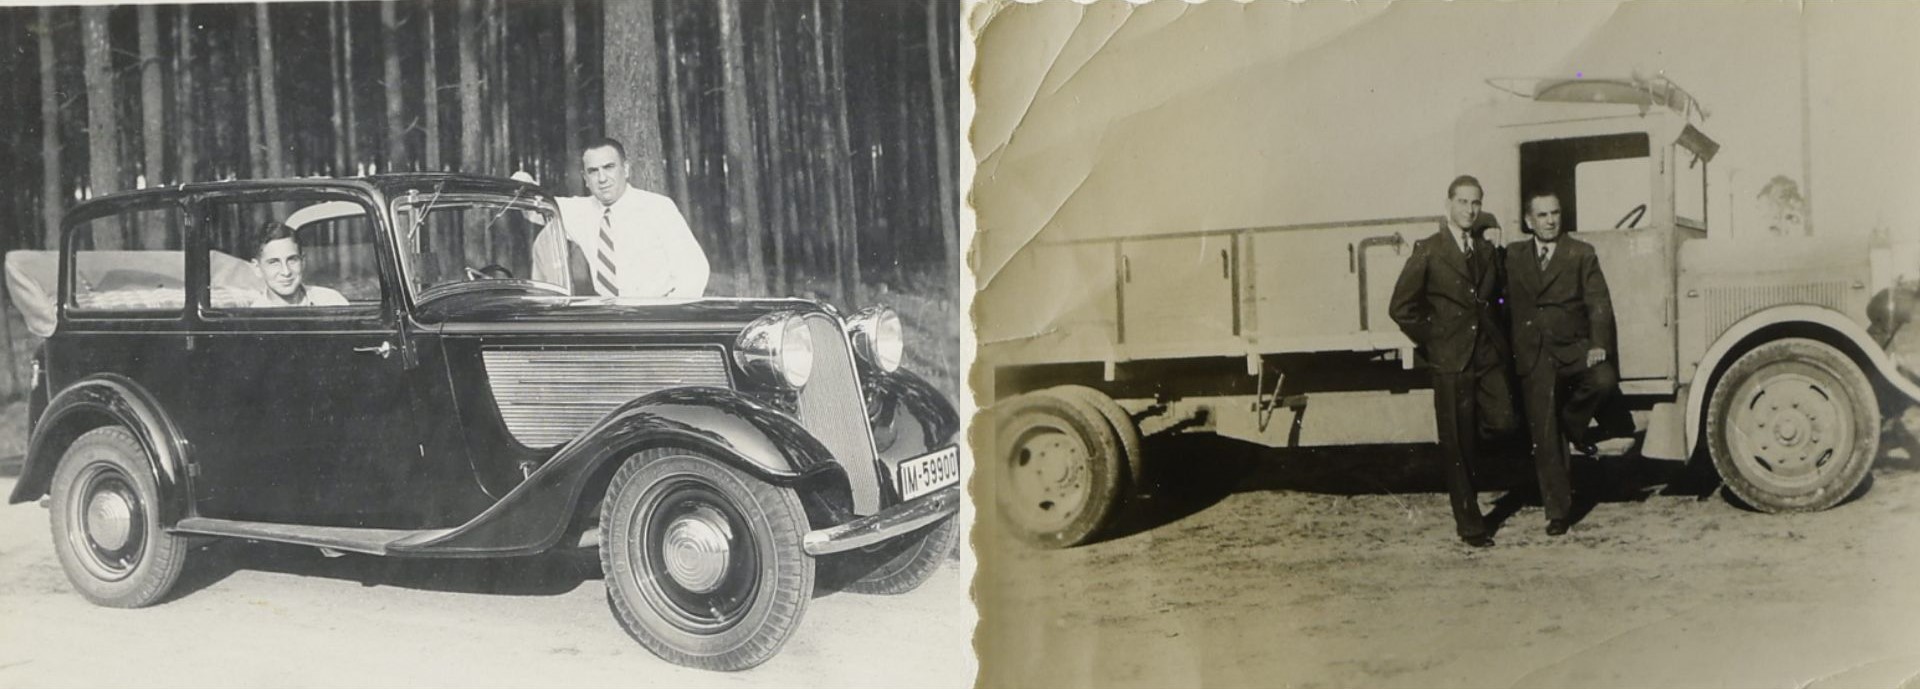 Zwei alte Fotografien, die jeweils mehrere Personen in einem Auto bzw. vor einem Lastwagen zeigen.